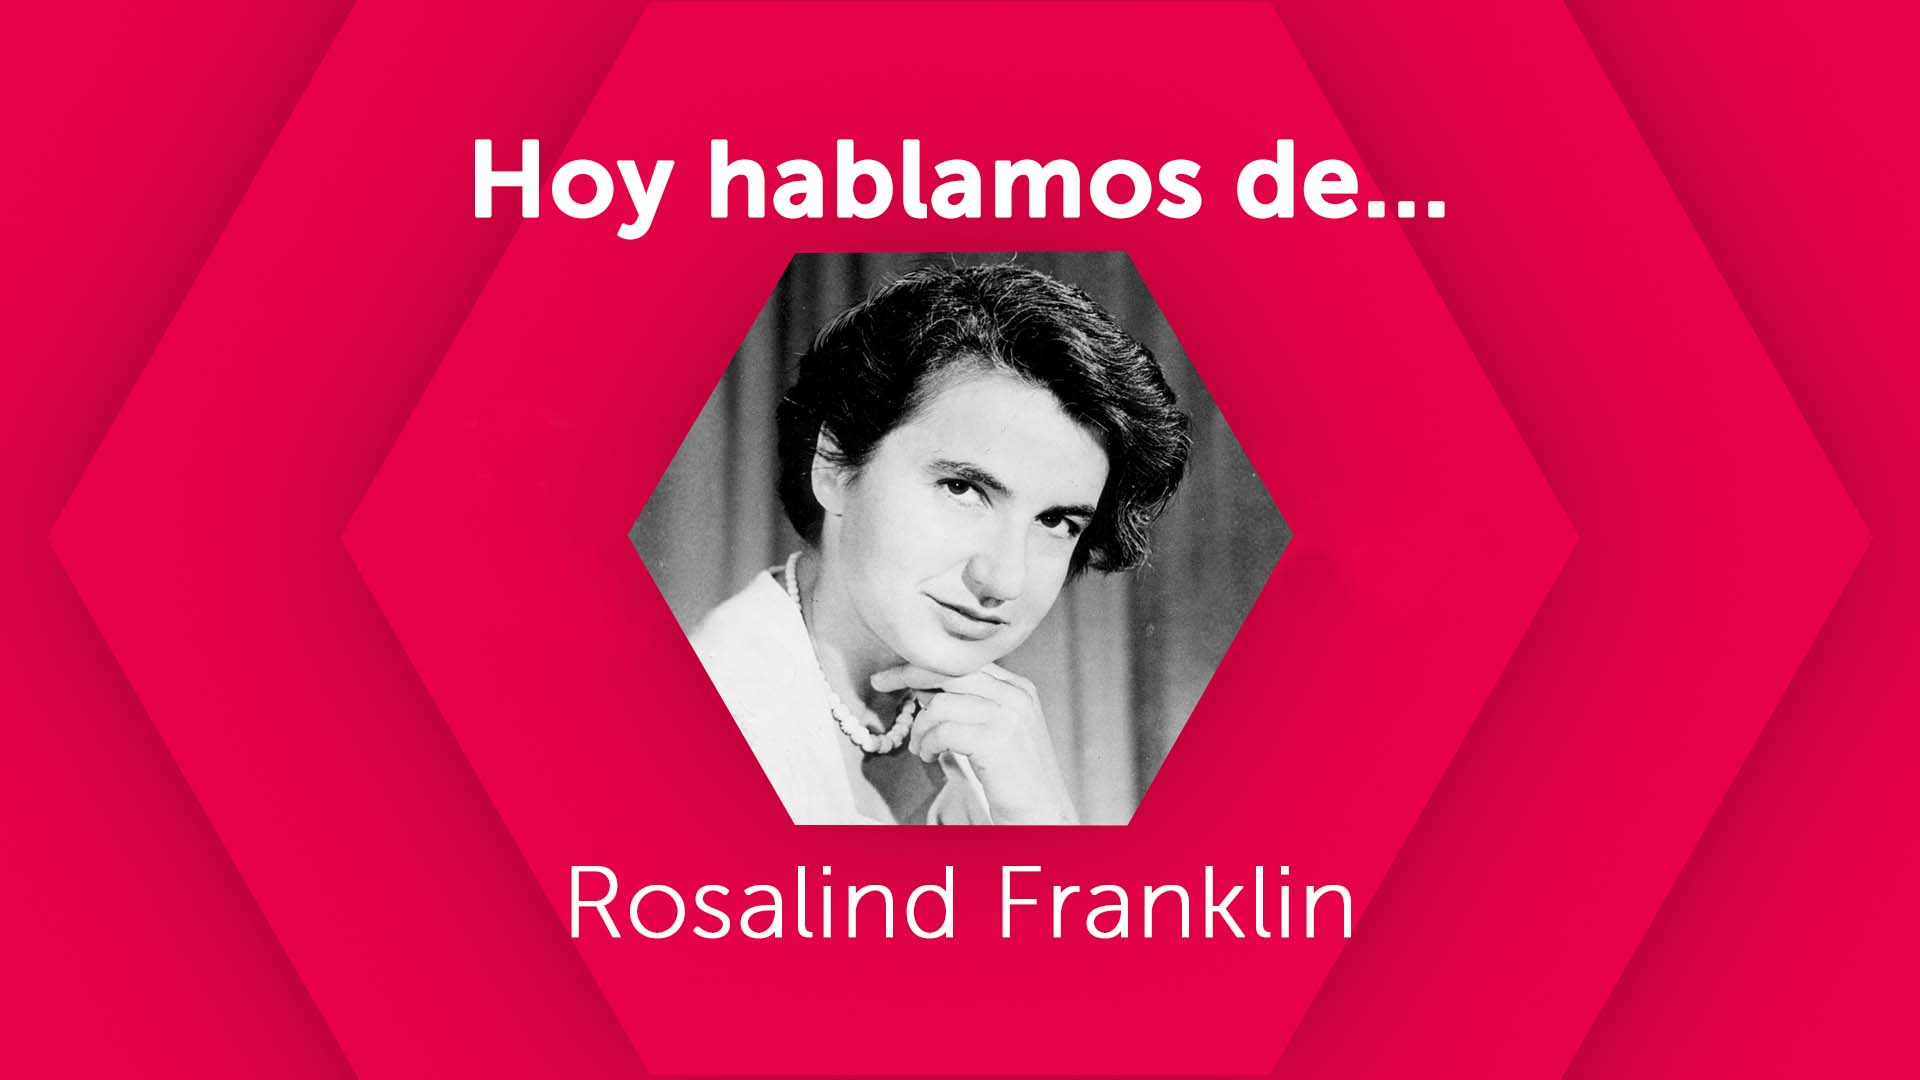 Hoy hablamos de Rosalind Franklin